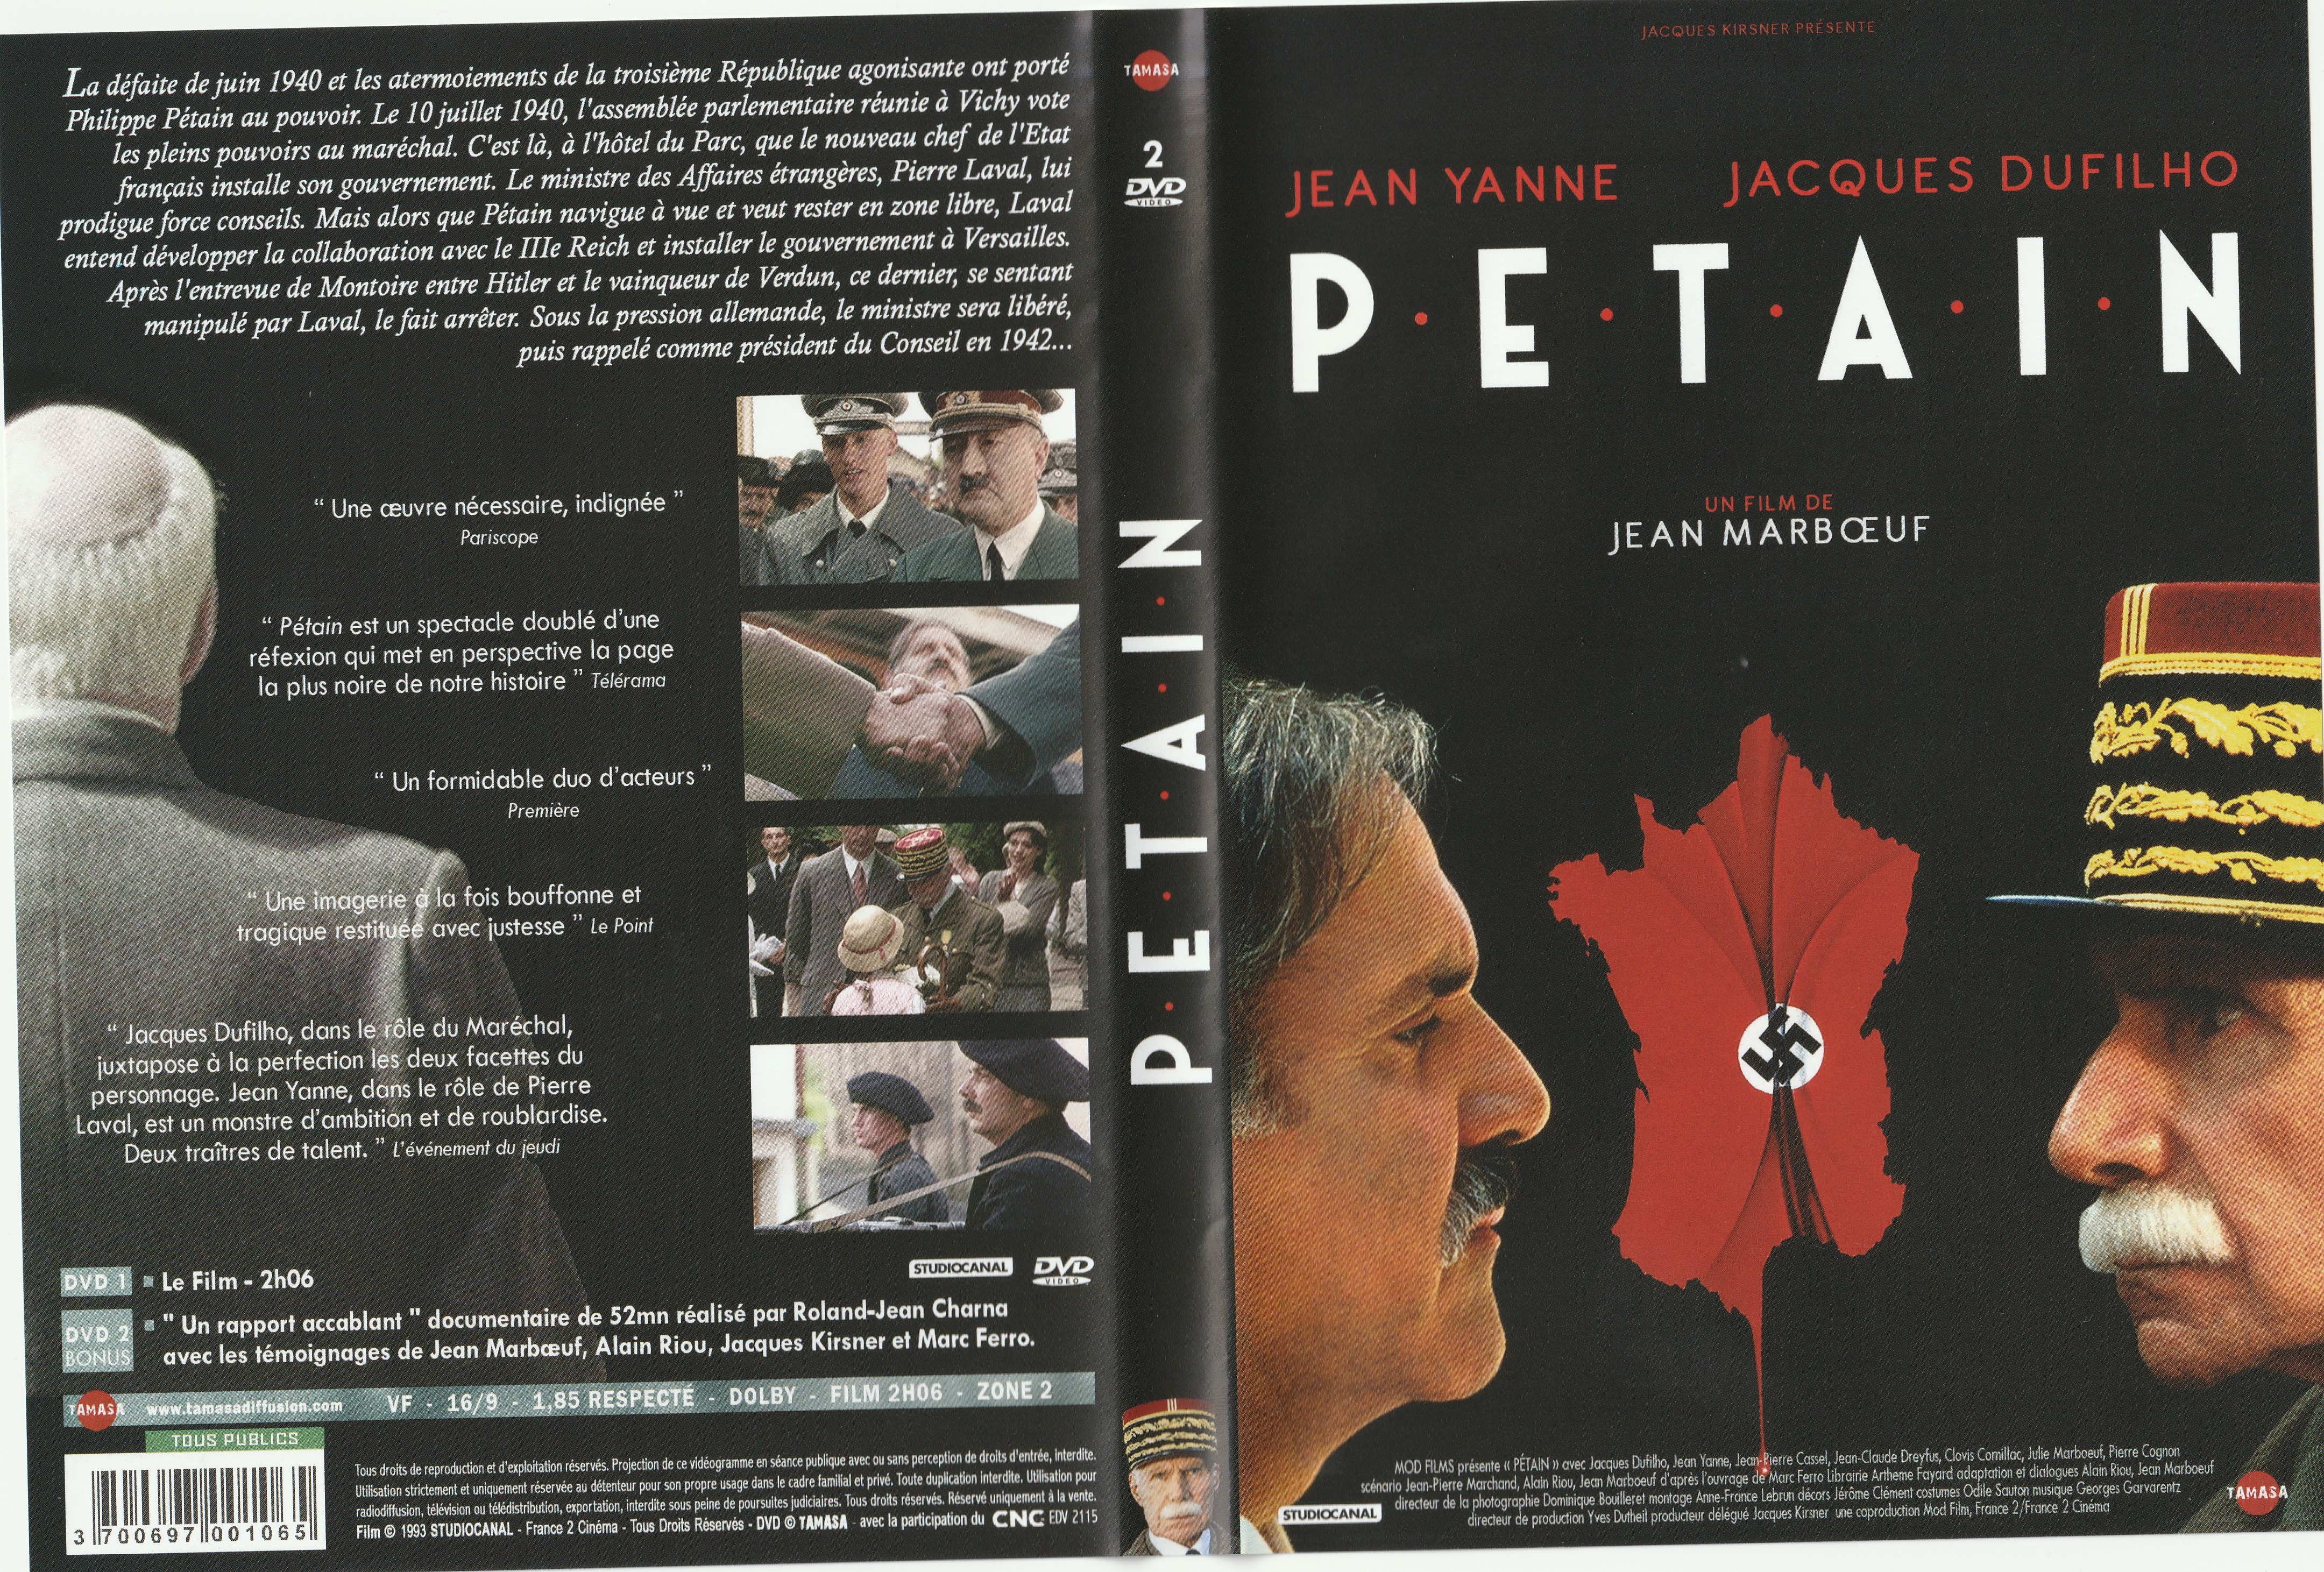 Jaquette DVD Ptain